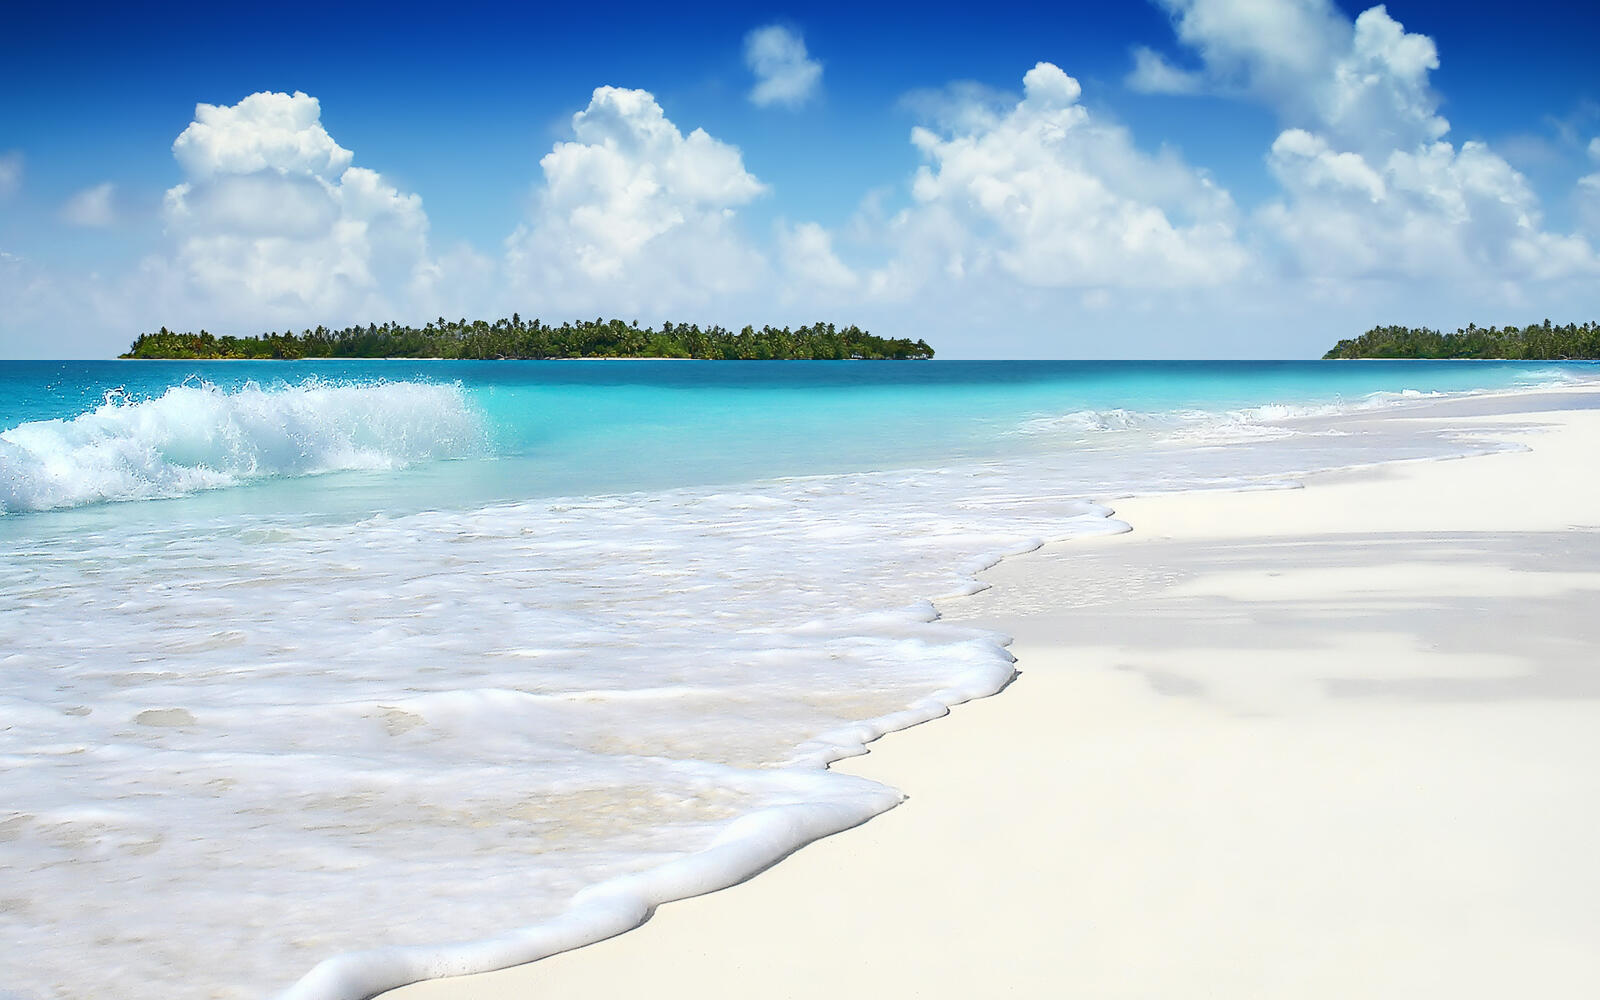 Wallpapers summer beach island on the desktop